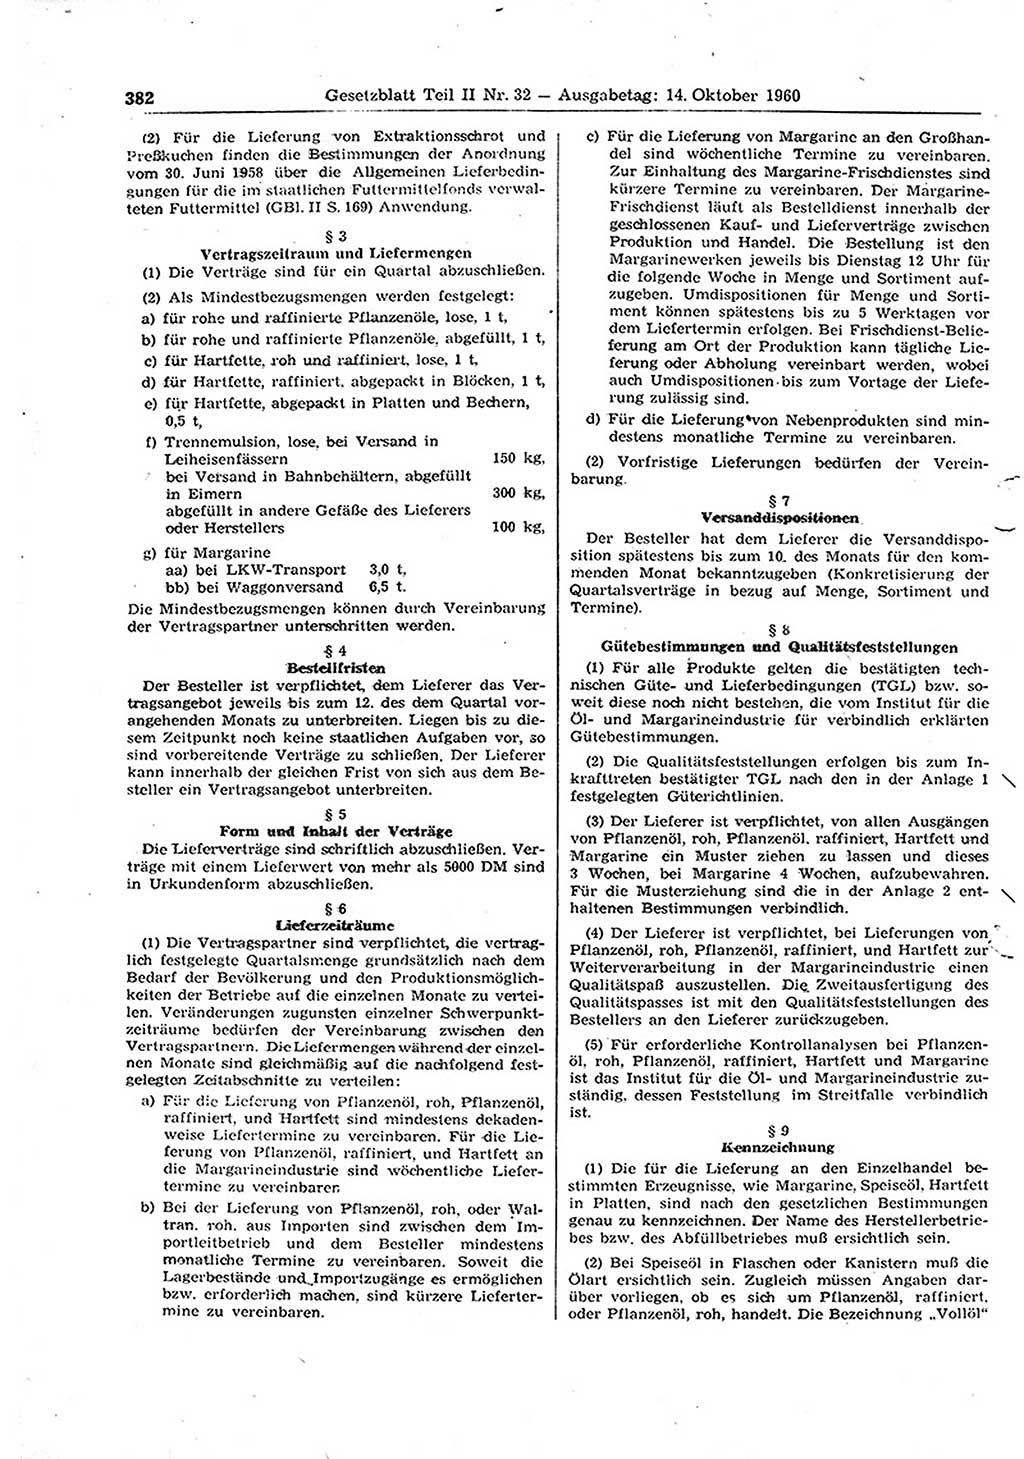 Gesetzblatt (GBl.) der Deutschen Demokratischen Republik (DDR) Teil ⅠⅠ 1960, Seite 382 (GBl. DDR ⅠⅠ 1960, S. 382)